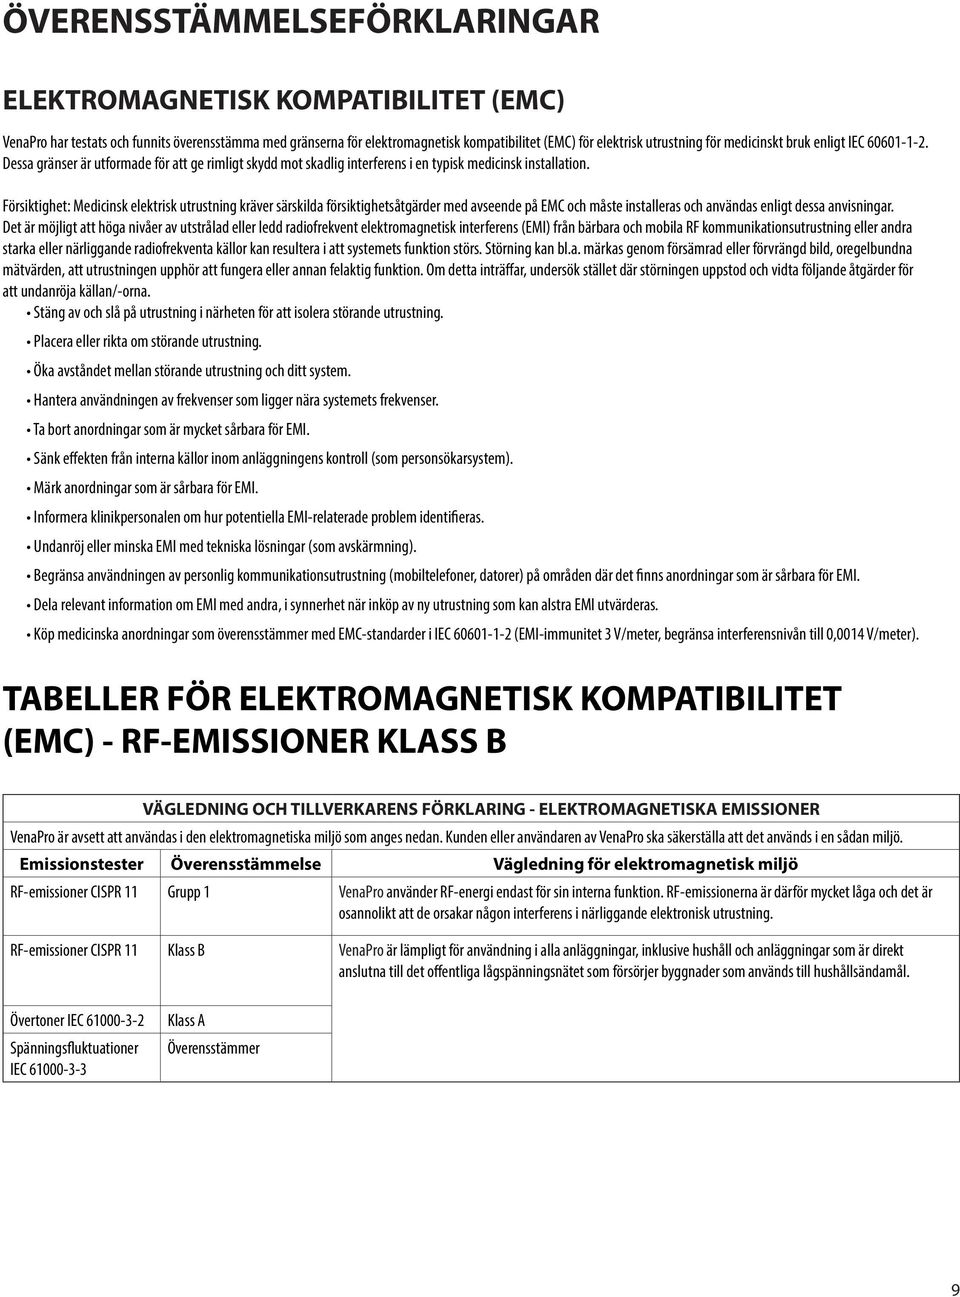 Försiktighet: Medicinsk elektrisk utrustning kräver särskilda försiktighetsåtgärder med avseende på EMC och måste installeras och användas enligt dessa anvisningar.